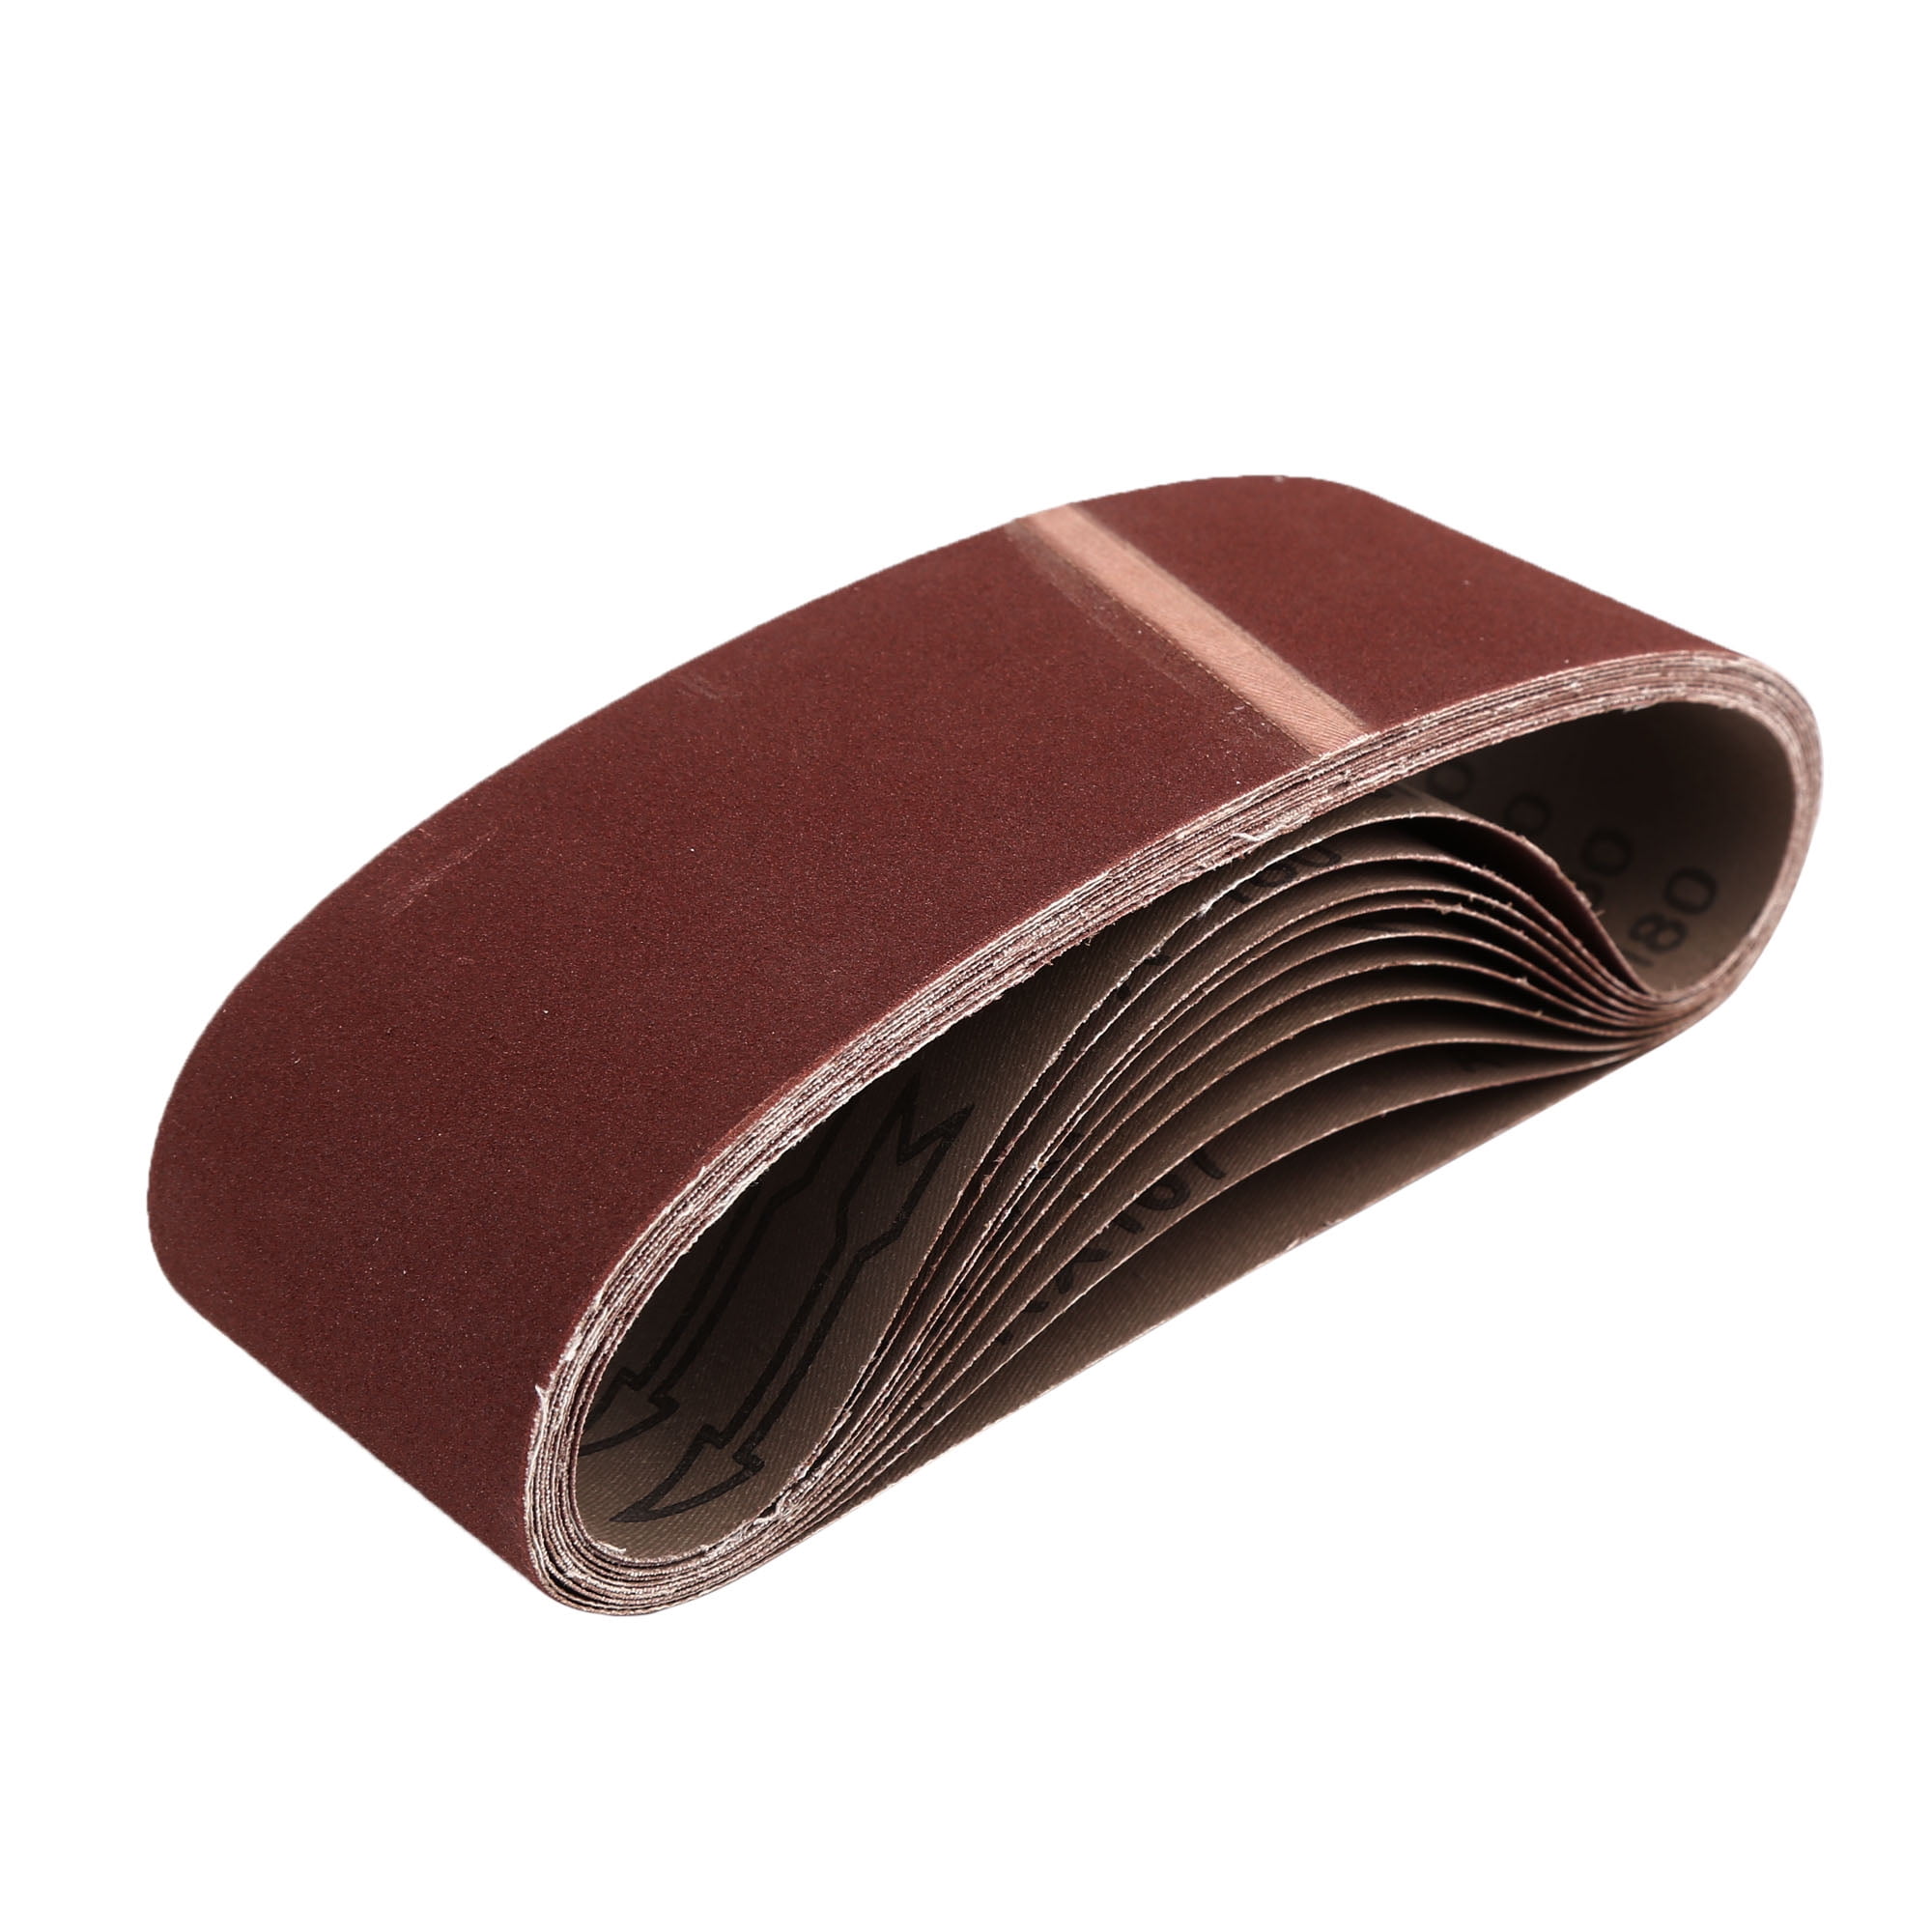 #800 Grit Sandpaper Aluminum Oxide Sanding Belt for BLUEROCK 40B Grinder Sander 